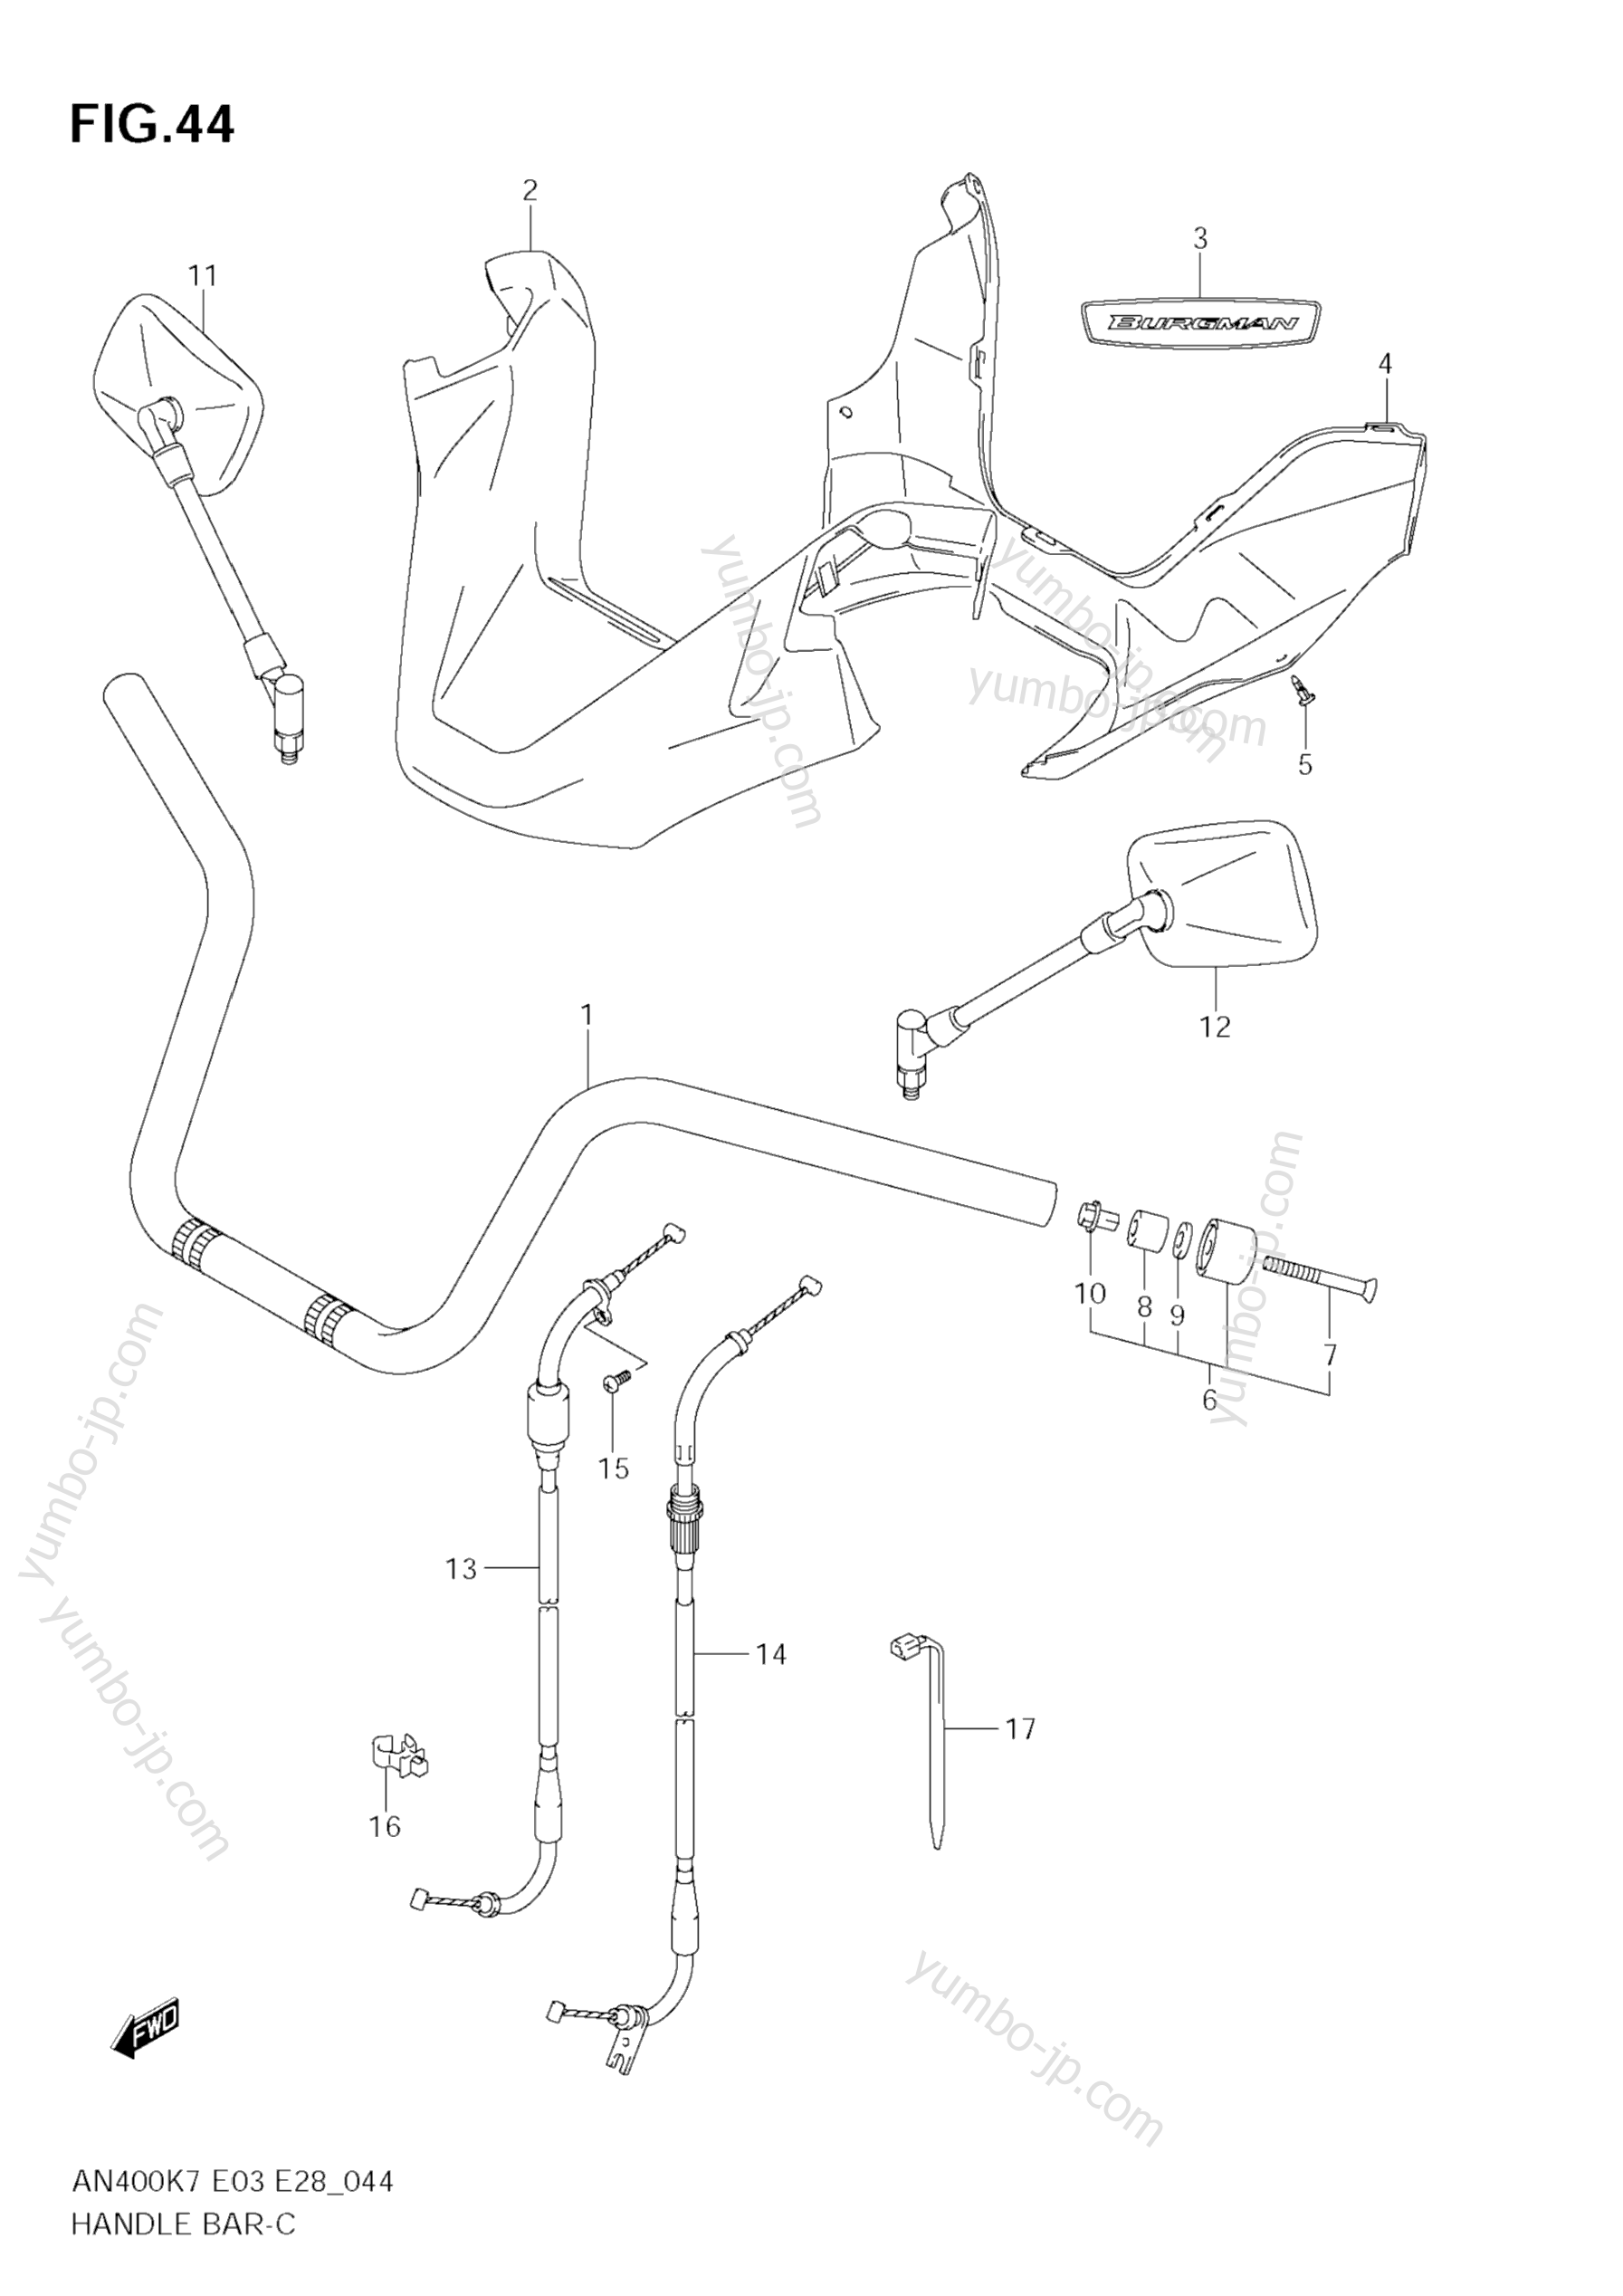 Румпель (рукоятка управления) для скутеров SUZUKI Burgman (AN400) 2007 г.